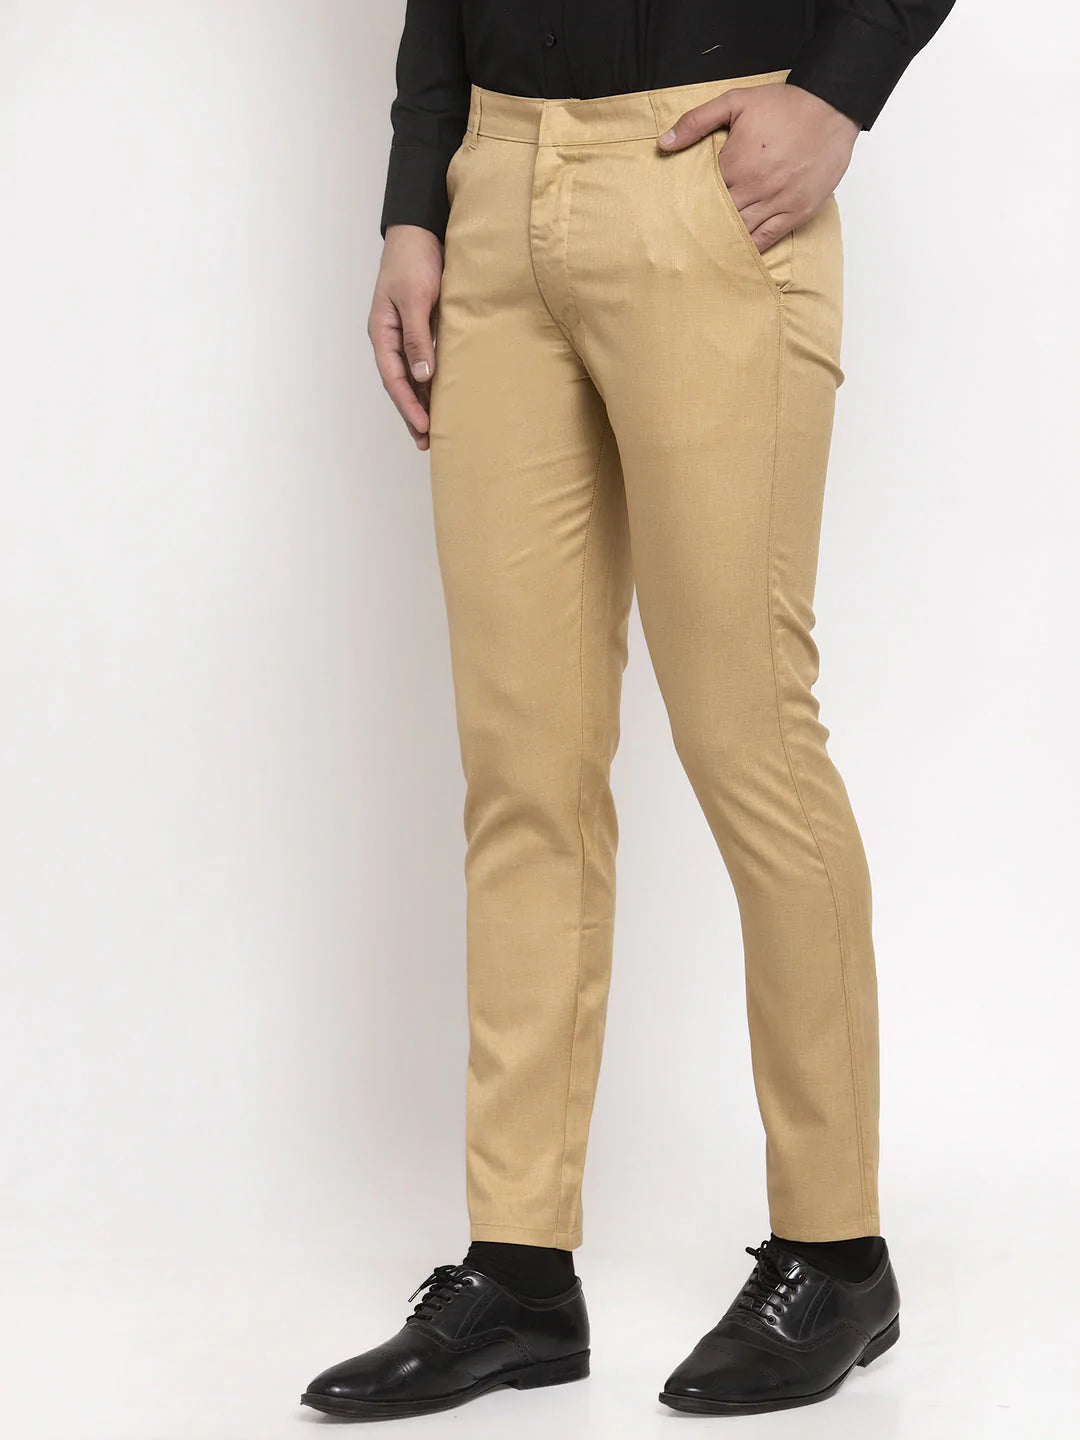 Jainish Men's Beige Cotton Solid Formal Trousers ( FGP 258Beige )